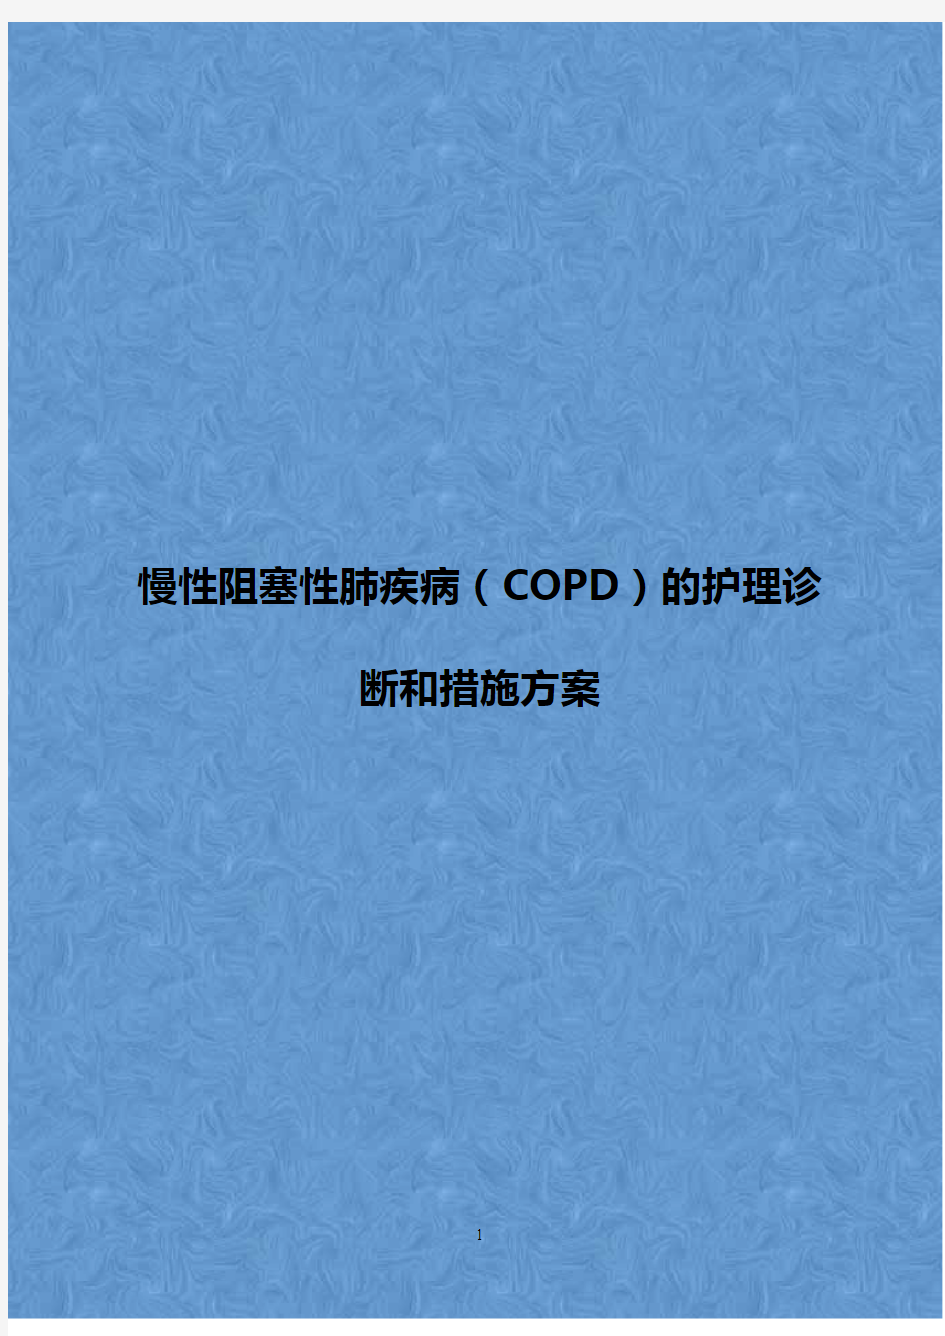 2018年完整版慢性阻塞性肺疾病(COPD)的护理诊断和措施方案